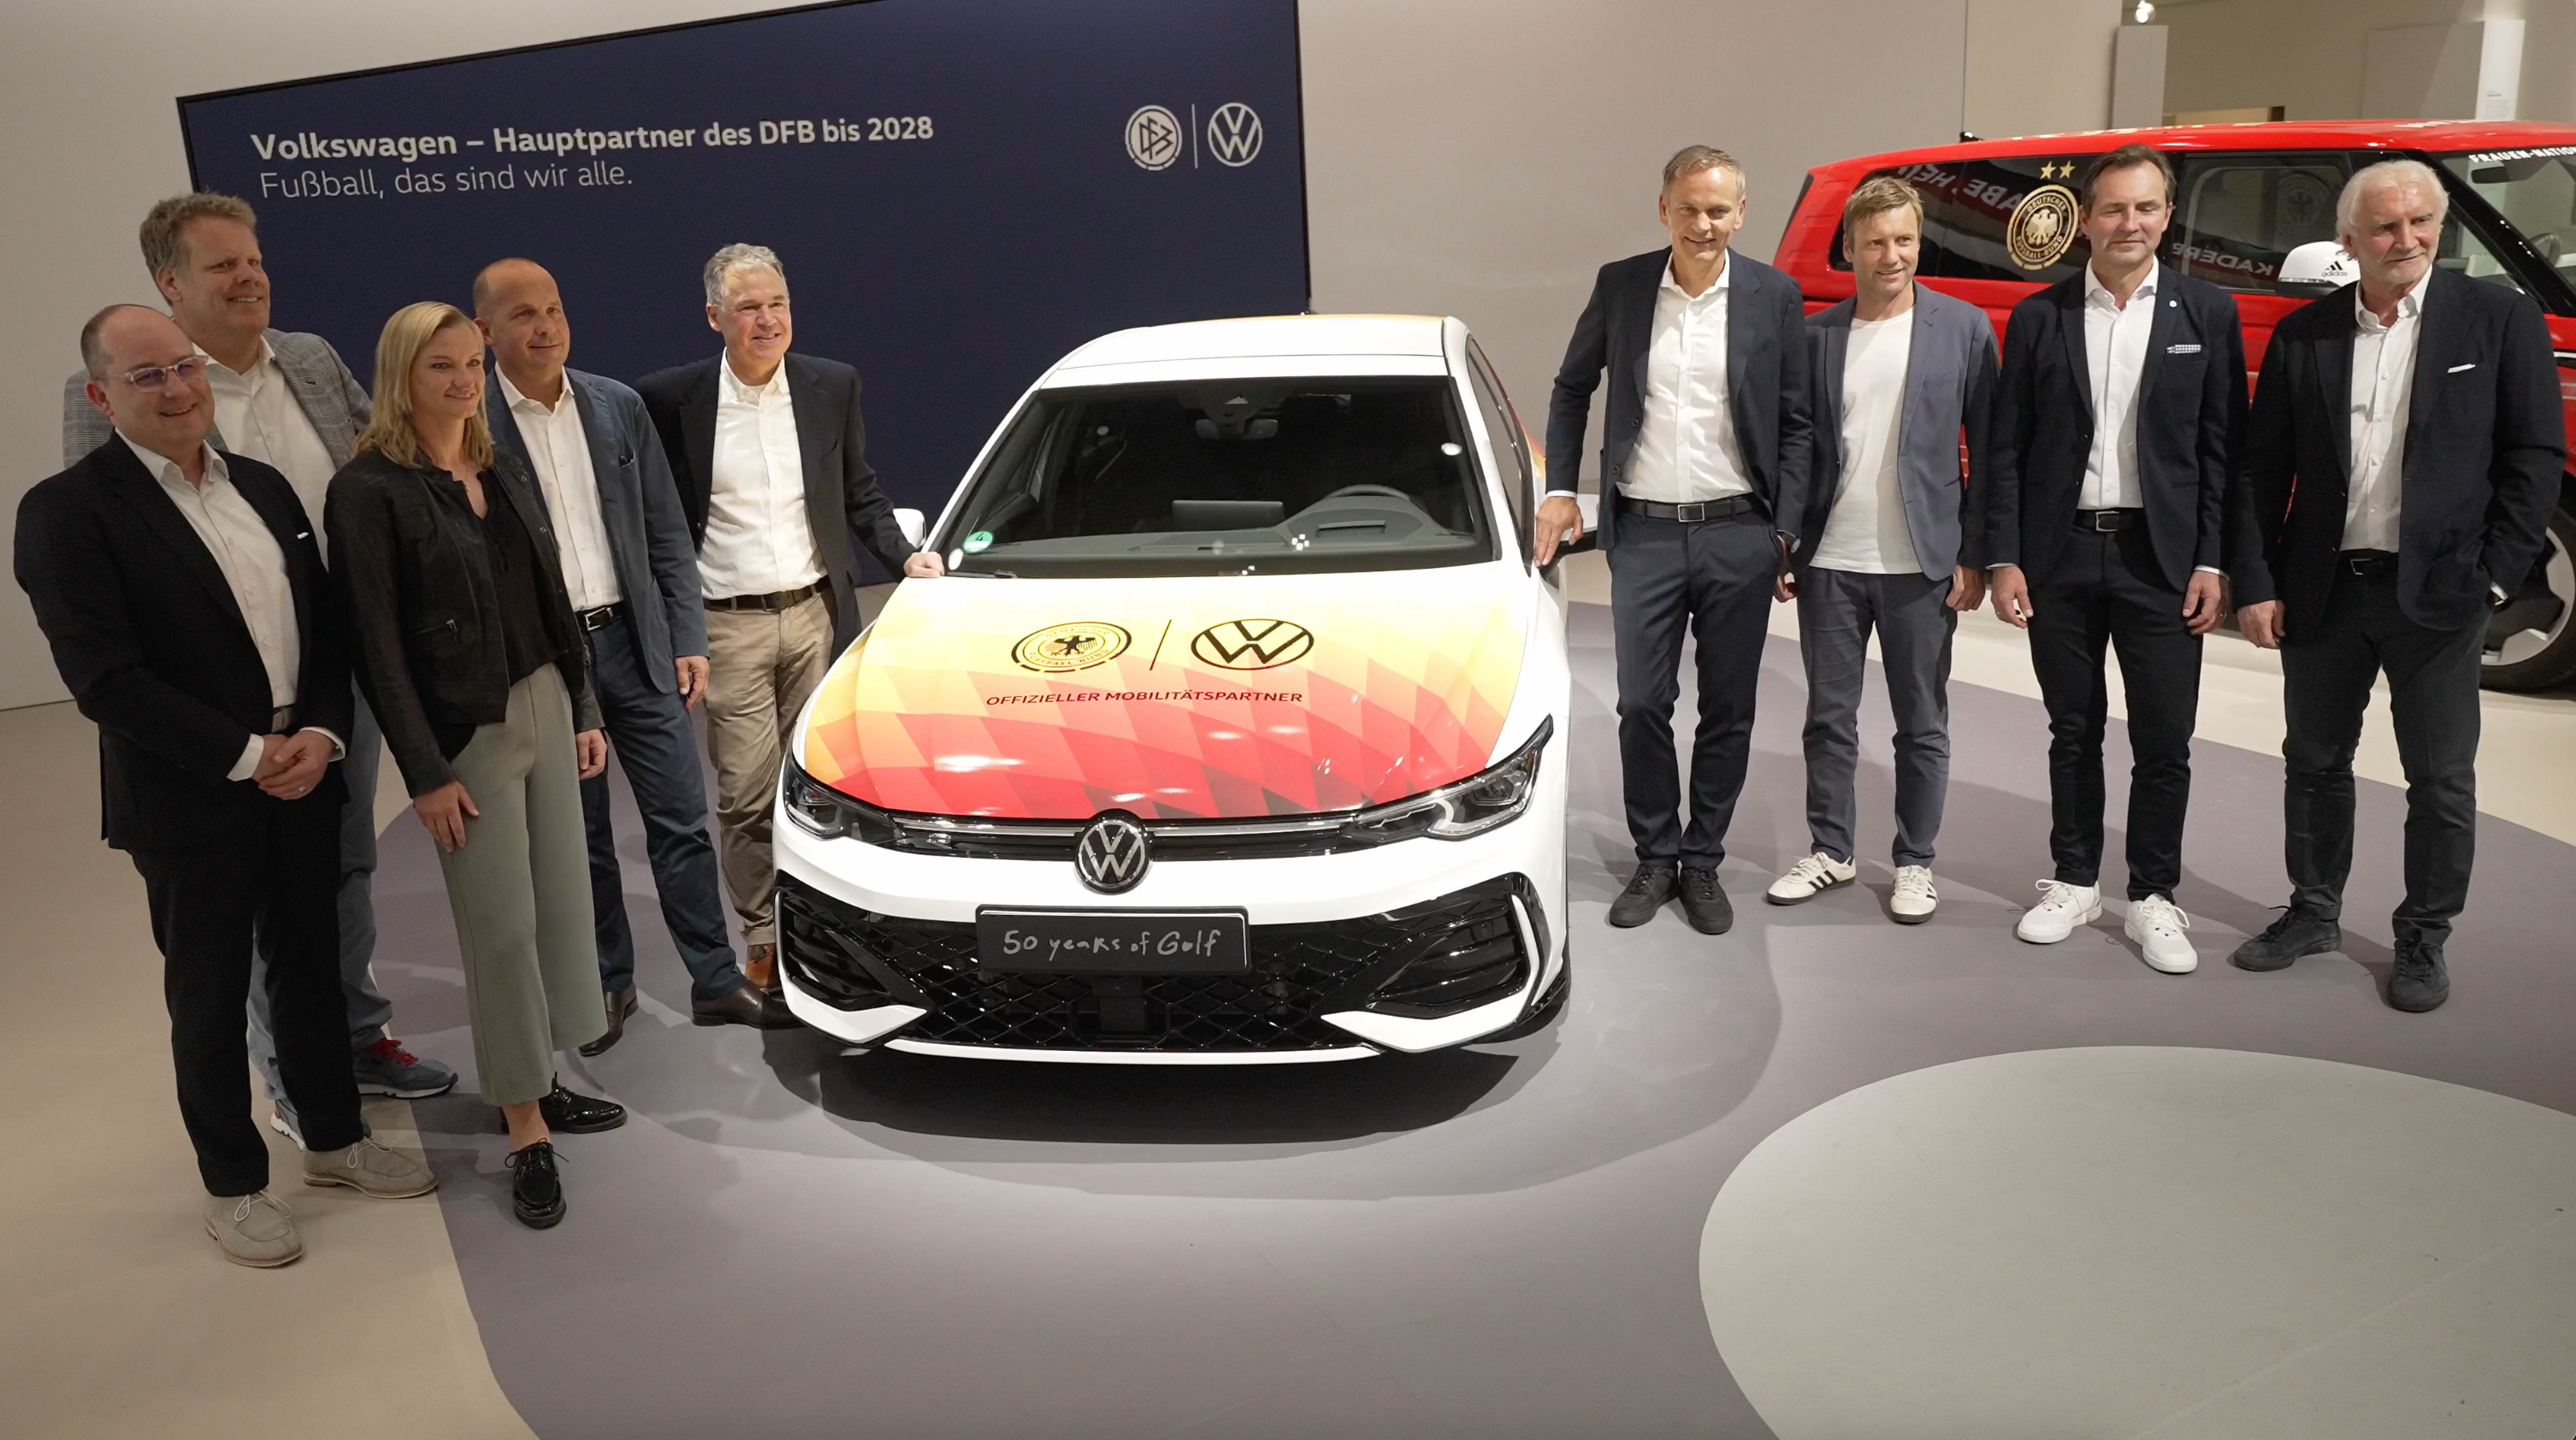 Doppelpass für den gesamten Fußball: Volkswagen und DFB verlängern Partnerschaft bis 2028